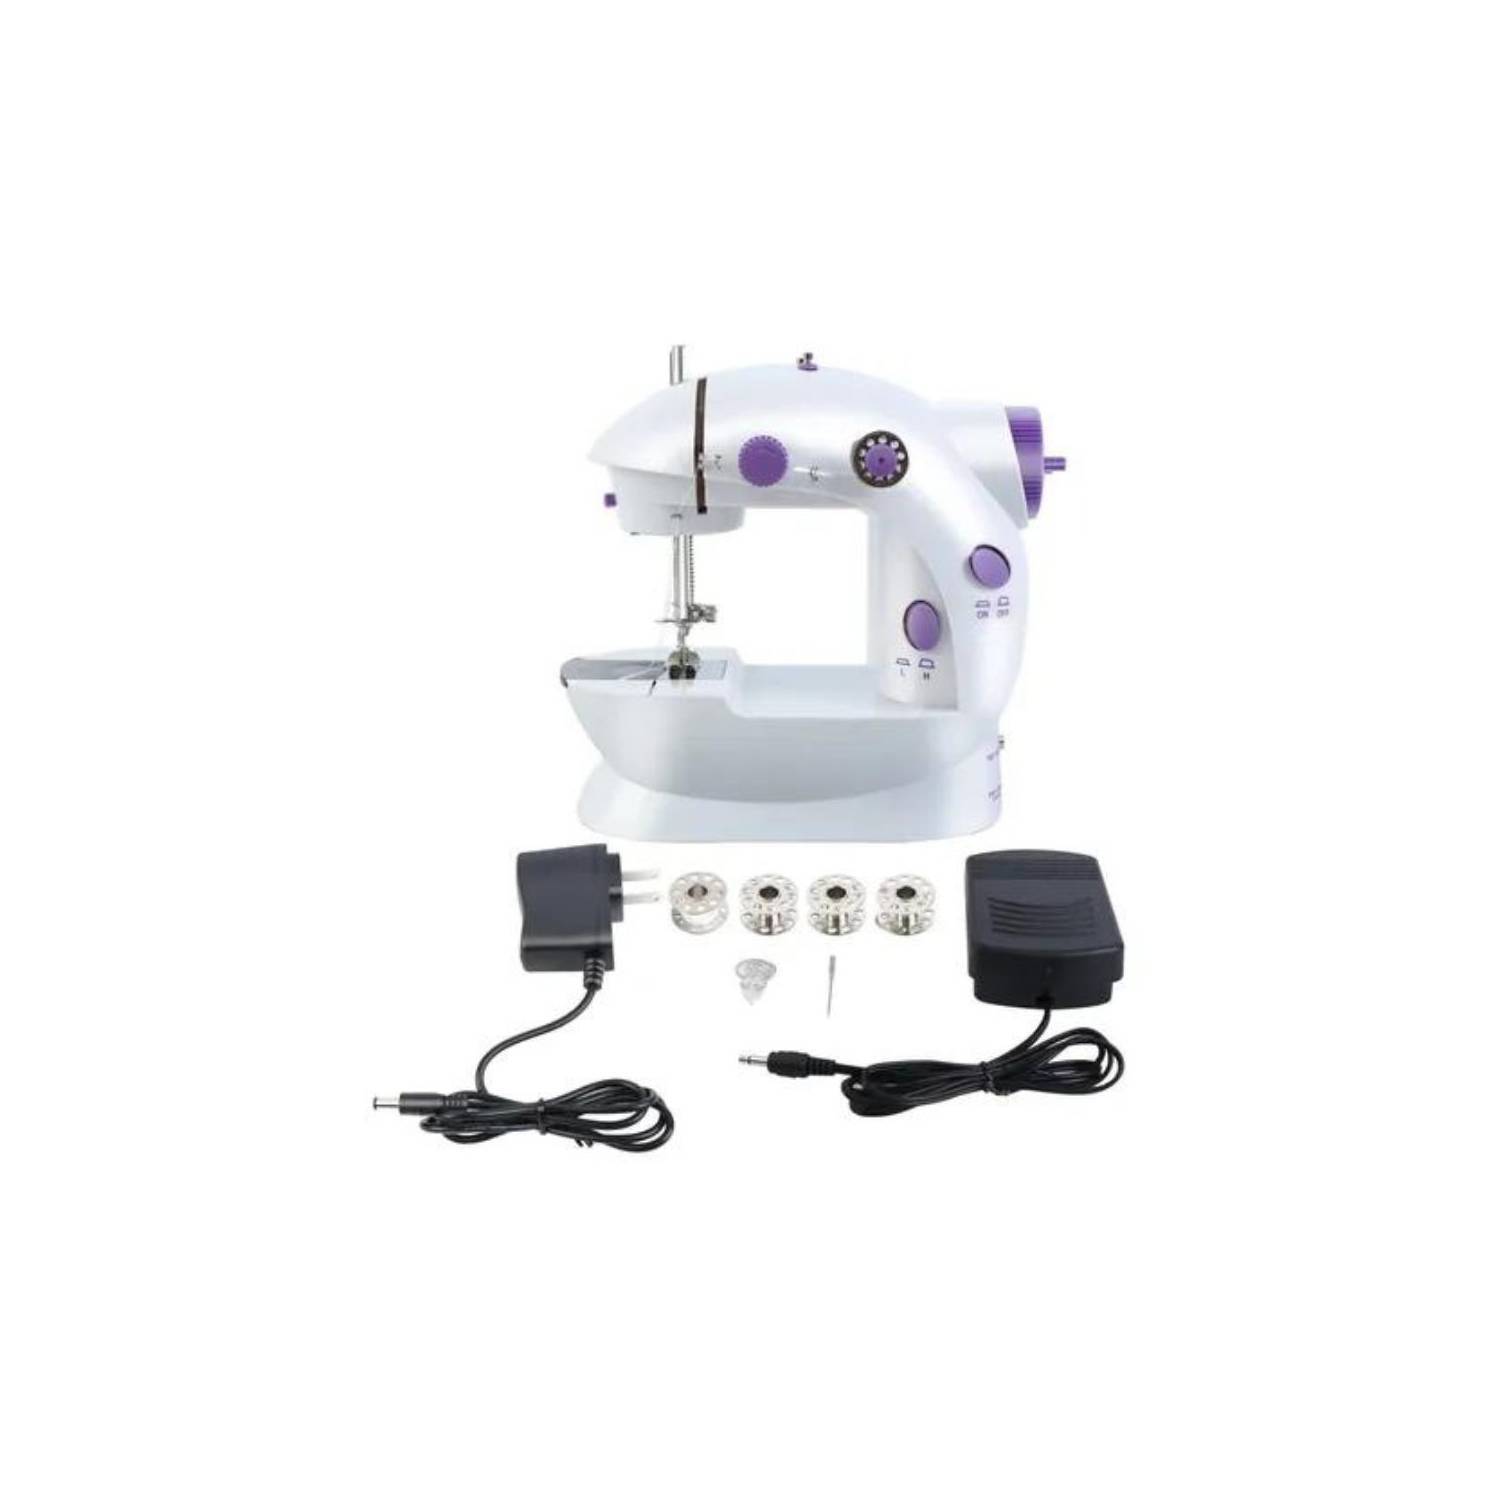 Maquina Coser Portatil a Pedal Mini Sewing Machine GENERICO